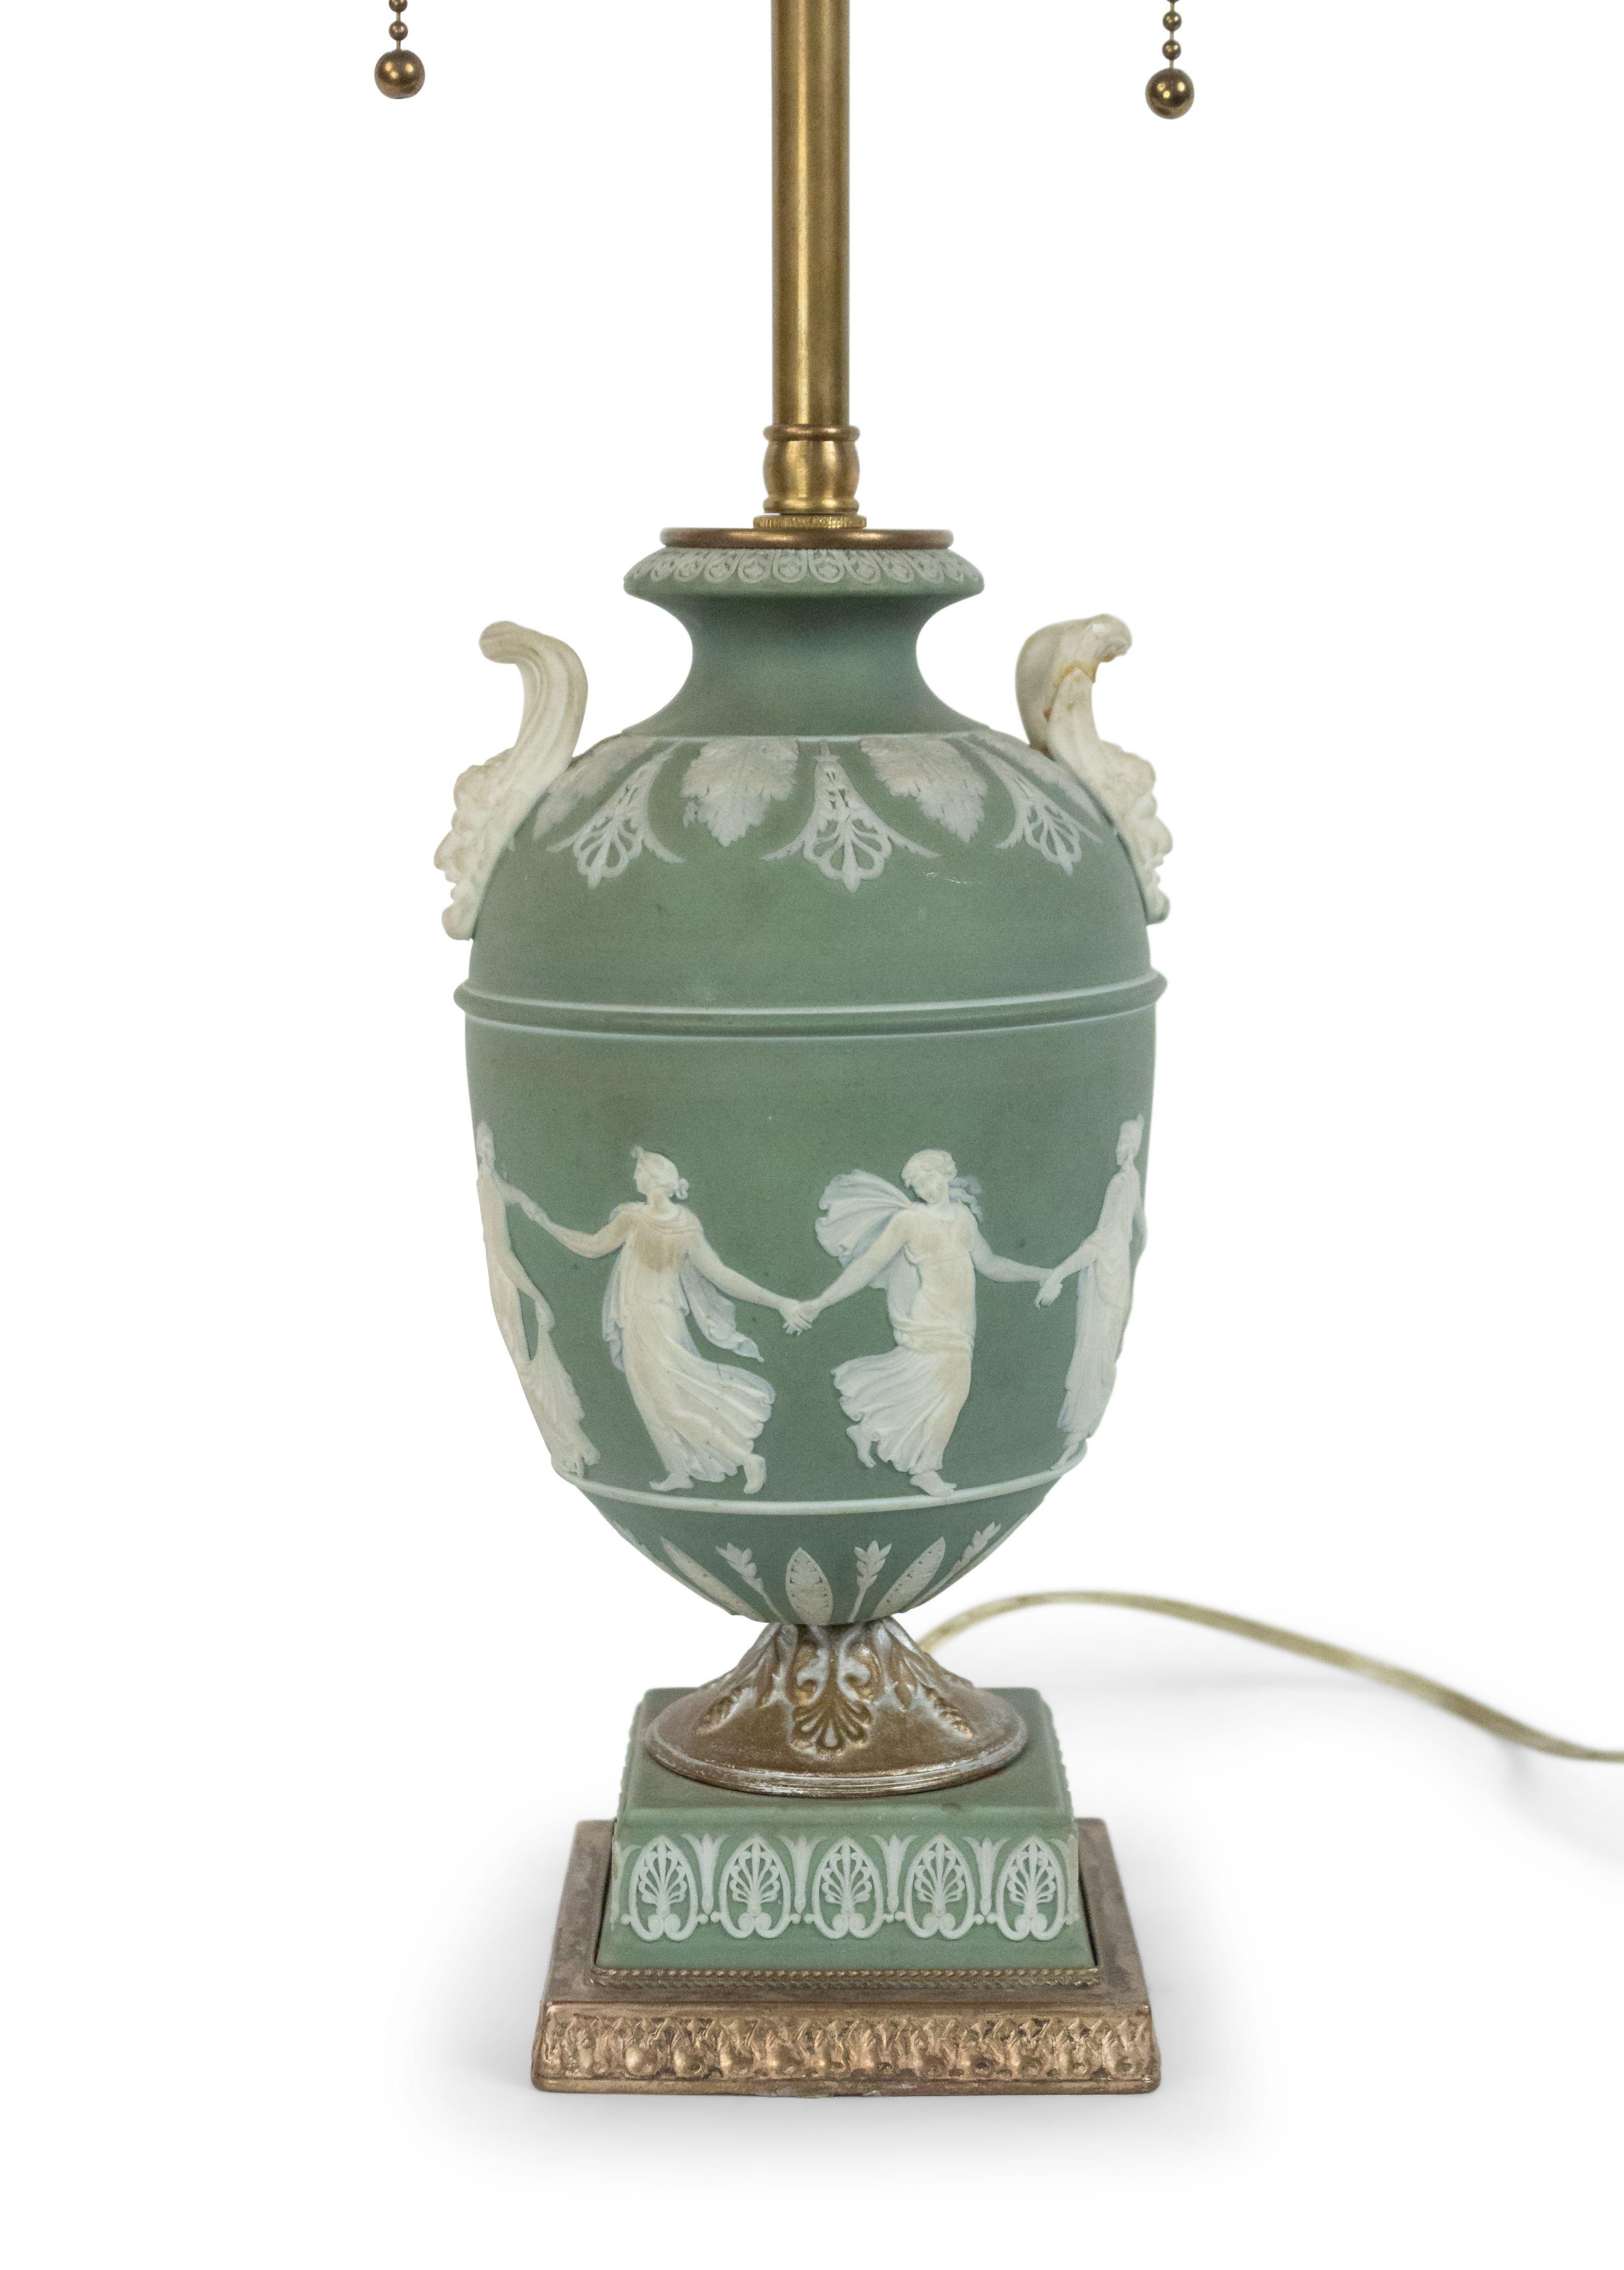 Lampe de table de style Adam anglais (19e siècle) en porcelaine verte et blanche Wedgwood en forme d'urne avec des figures et des poignées classiques.